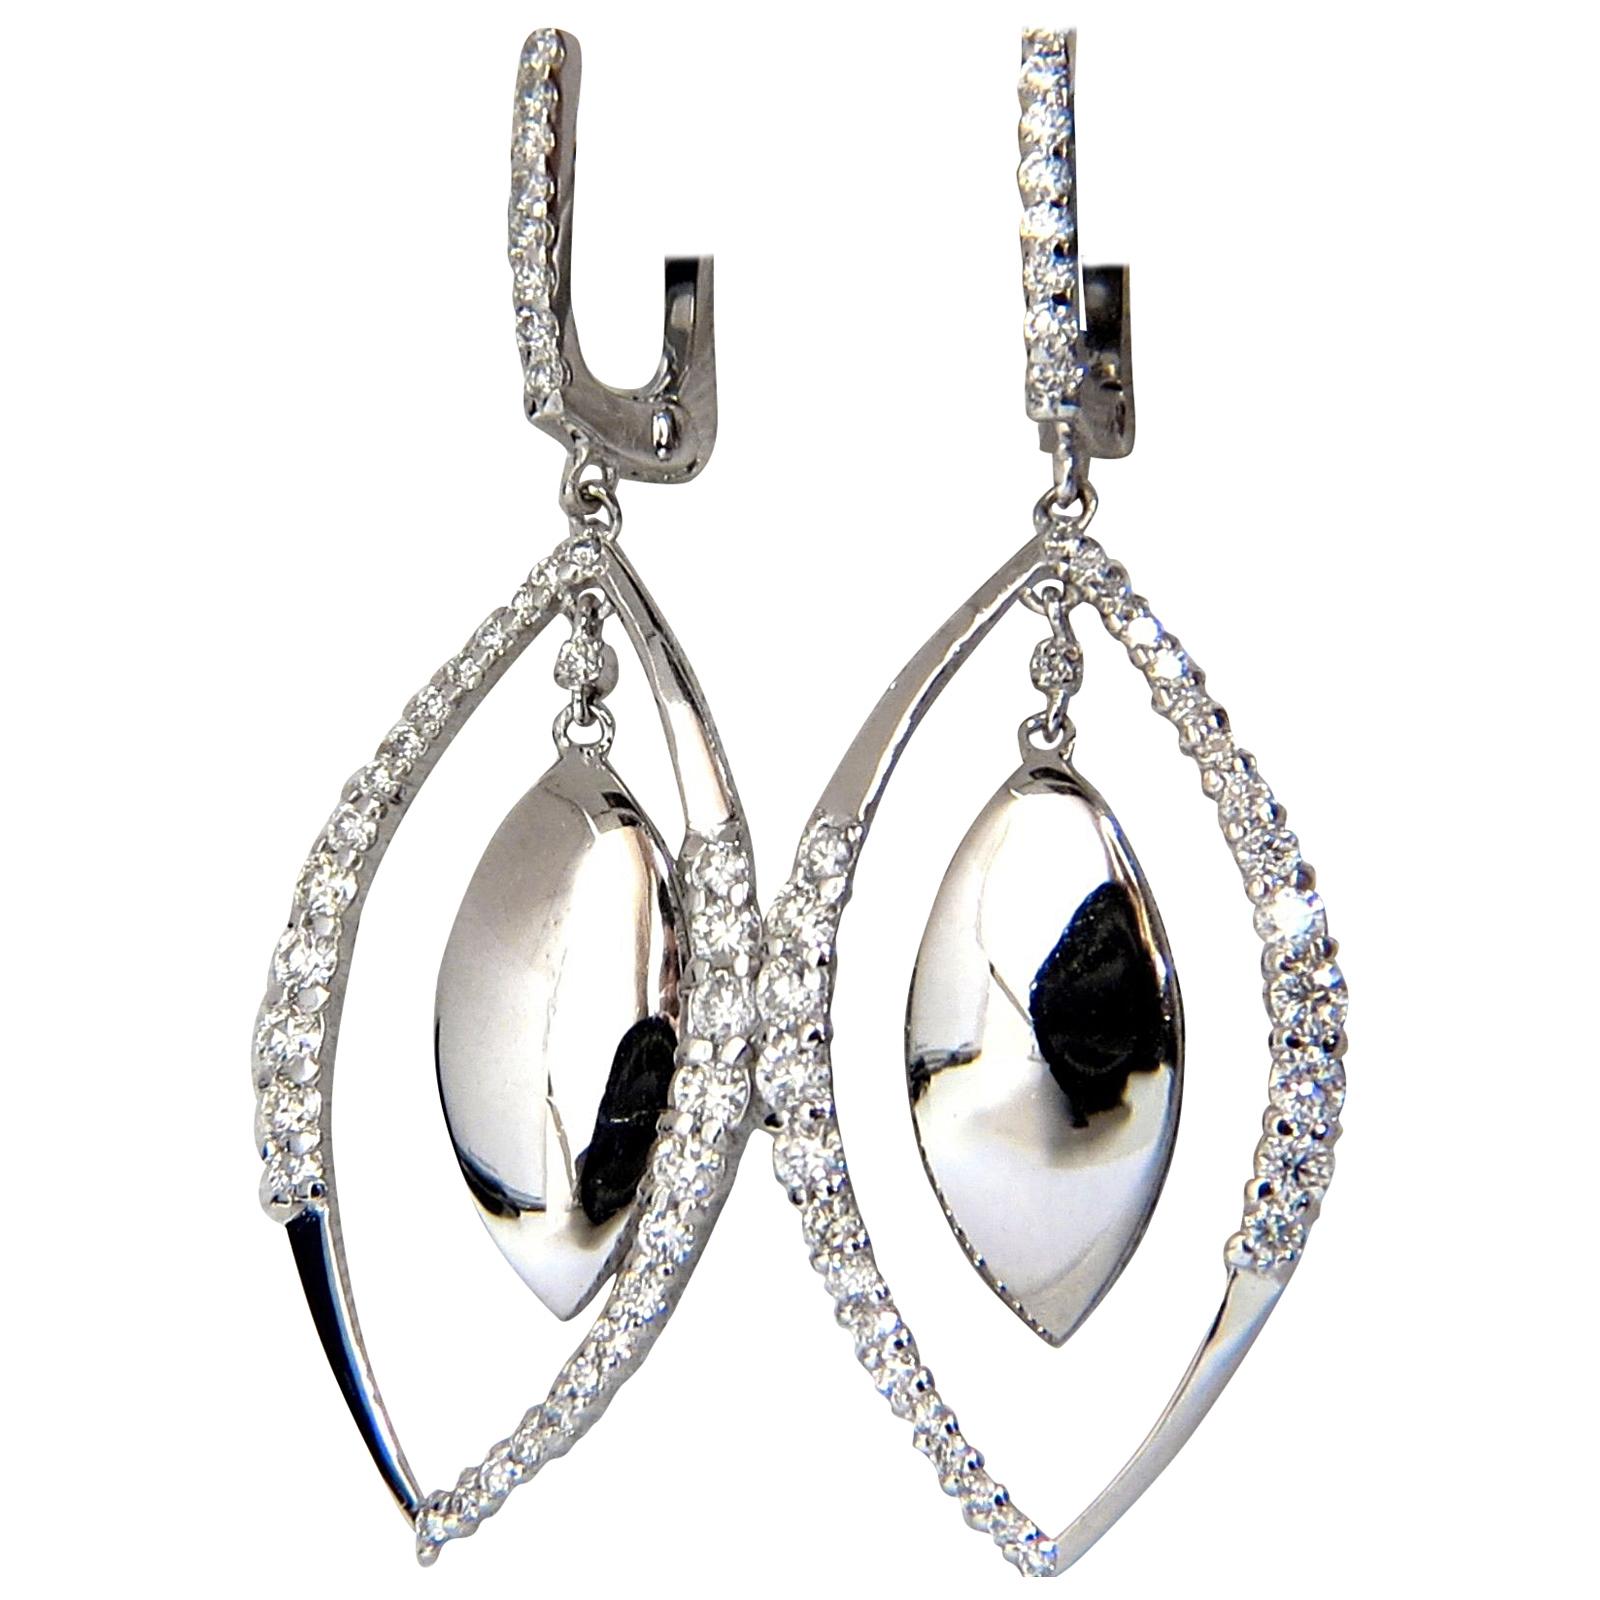 1.26 Carat Diamonds Marquise Form Dangle and Inner Earrings G/VS 14 Karat